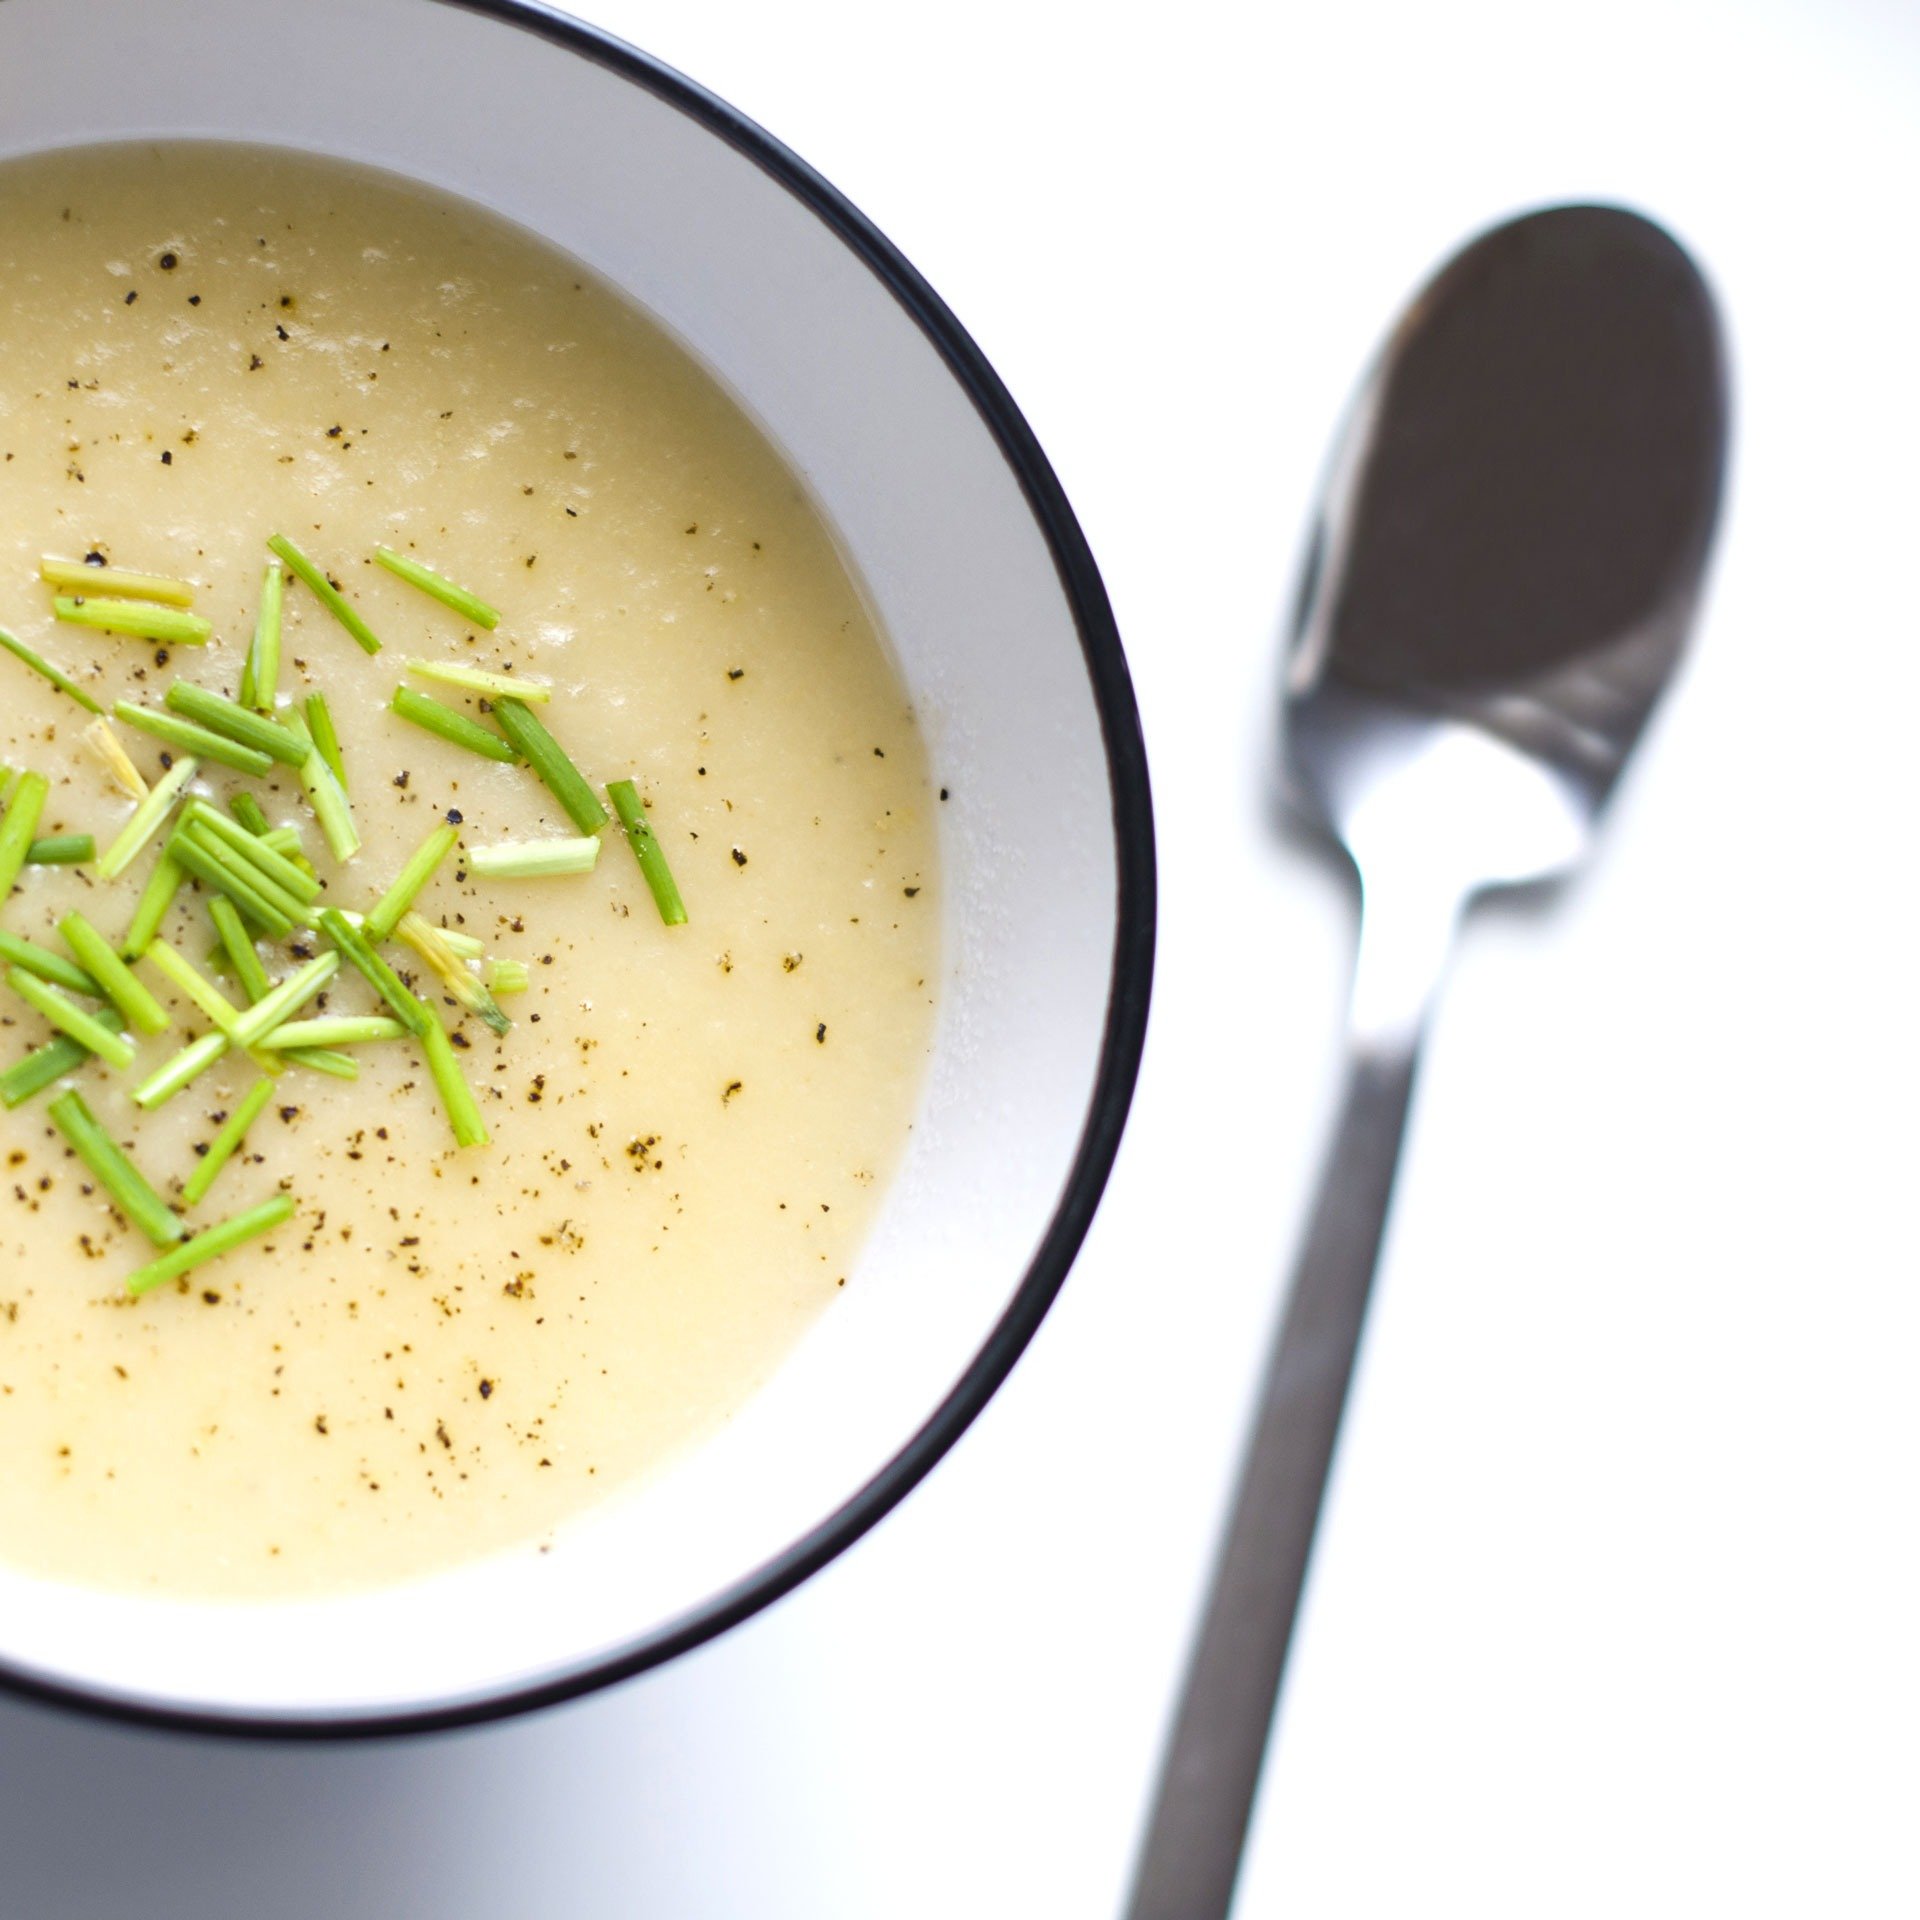 Potato leek soup — potage